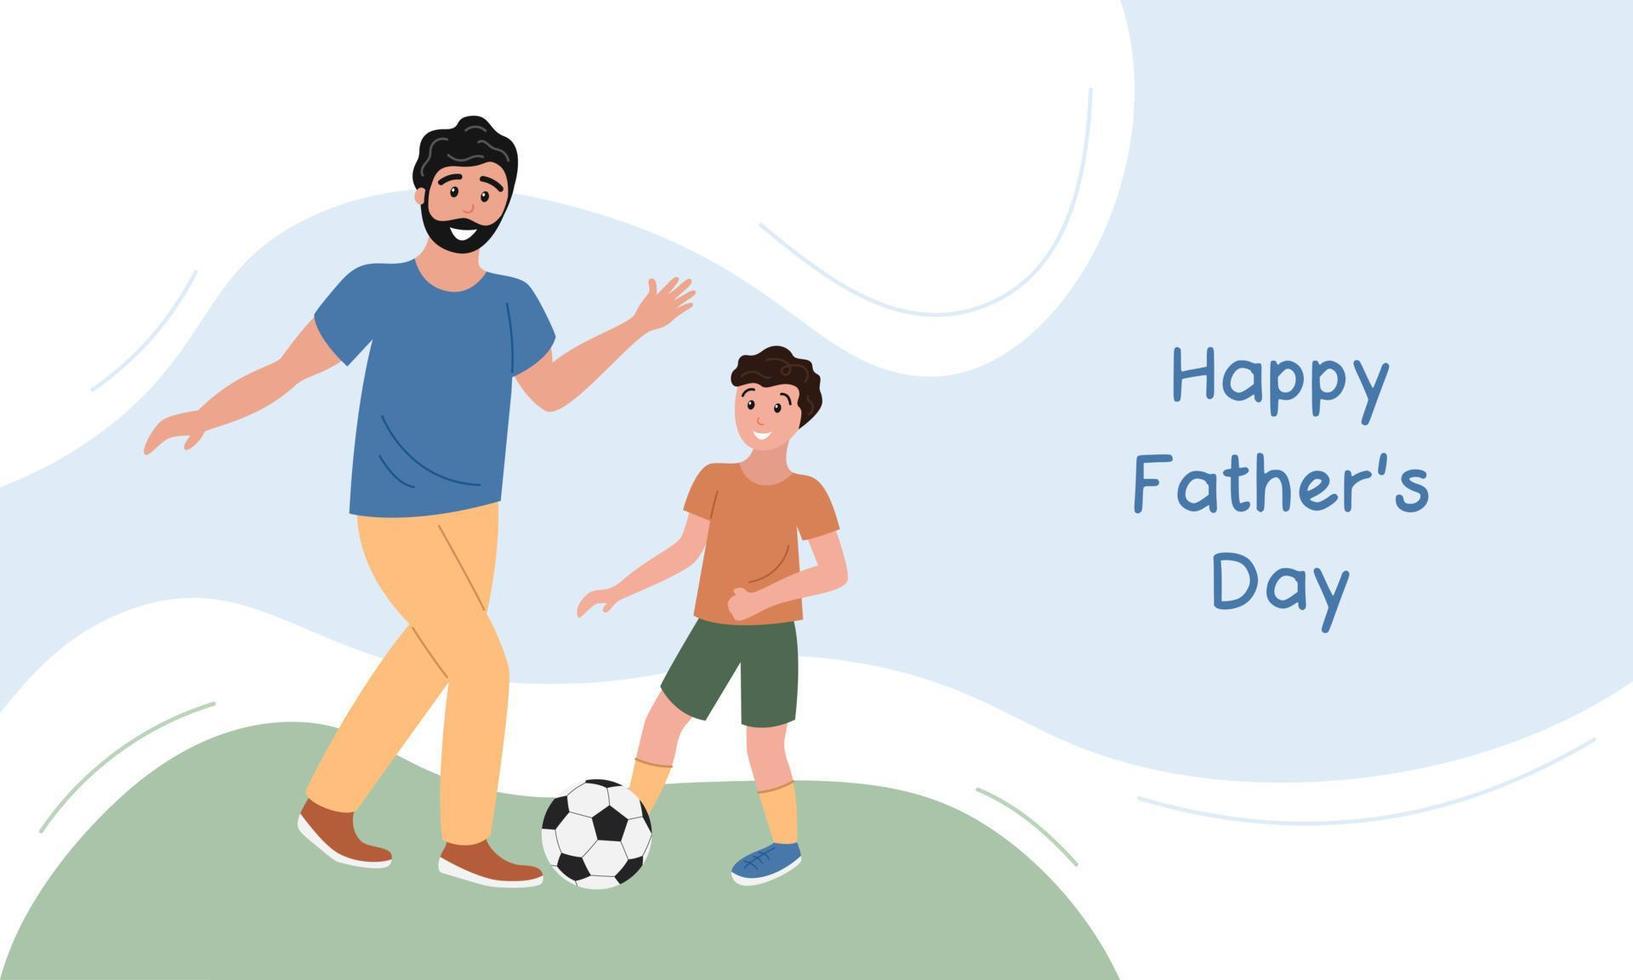 Happy Fathers Day Banner, Grußkarte. vater und sohn spielen zusammen fußball. Vater, Junge und Fußball auf Gras. flache vektorplakatillustration vektor